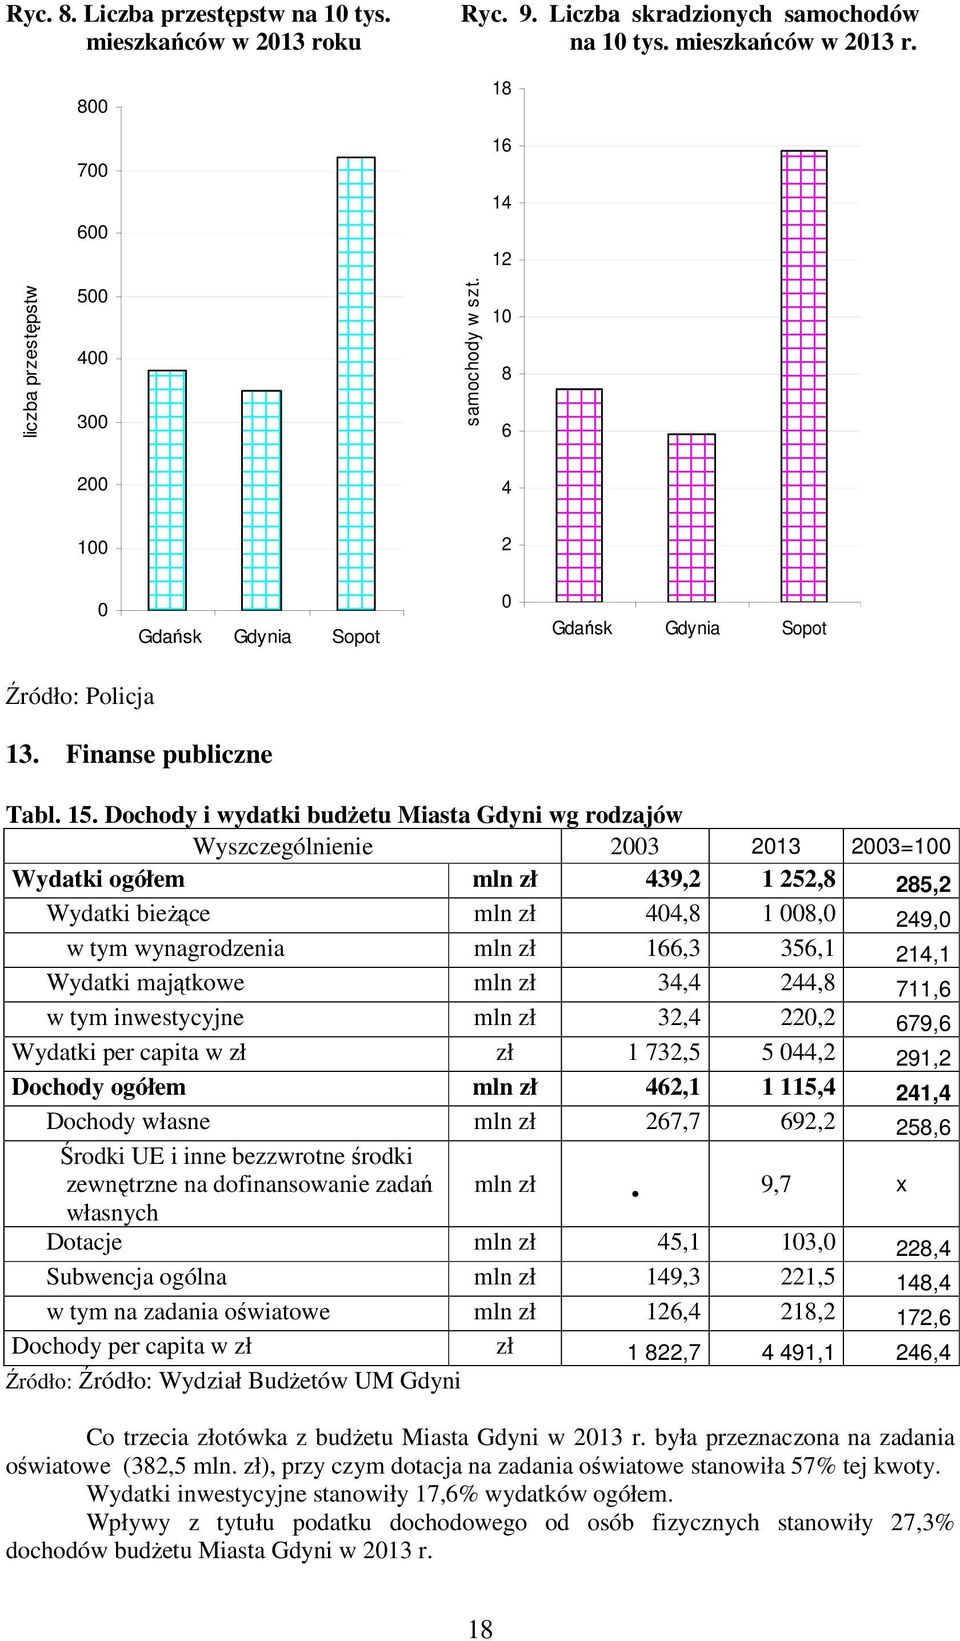 Dochody i wydatki budżetu Miasta Gdyni wg rodzajów Wyszczególnienie 2003 2013 2003=100 Wydatki ogółem mln zł 439,2 1 252,8 285,2 Wydatki bieżące mln zł 404,8 1 008,0 249,0 w tym wynagrodzenia mln zł